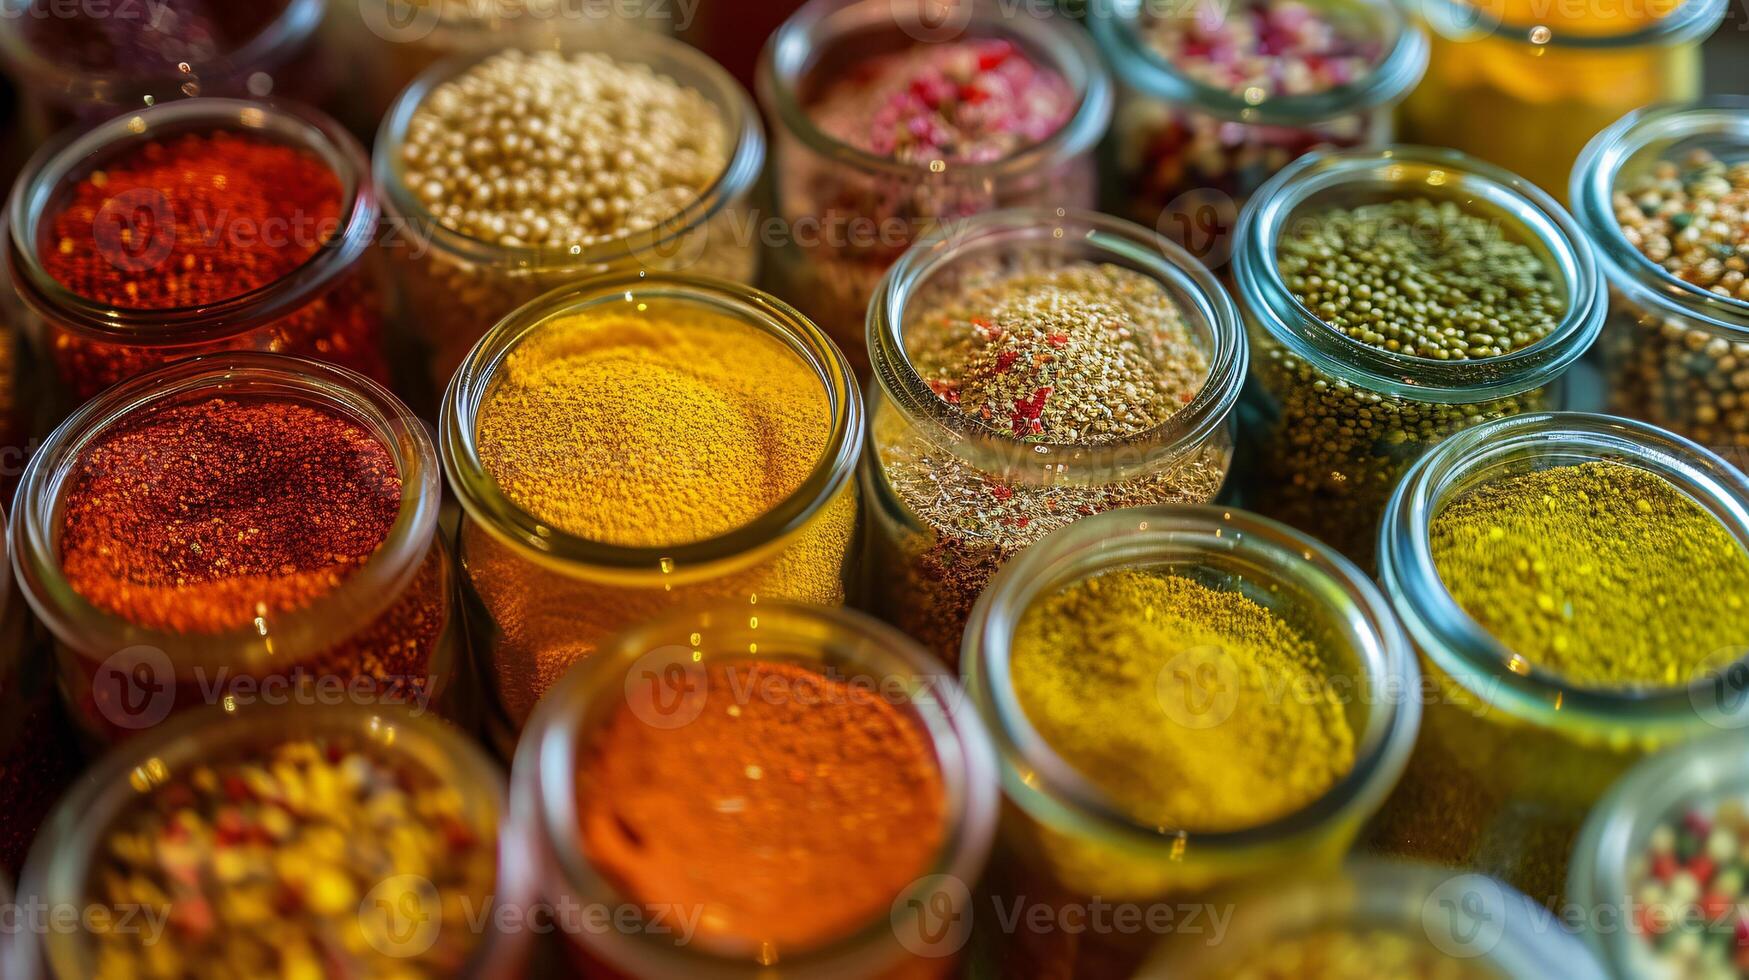 en sammansättning av färgrik italiensk kryddor i små glas burkar former en visuellt stimulerande arrangemang foto